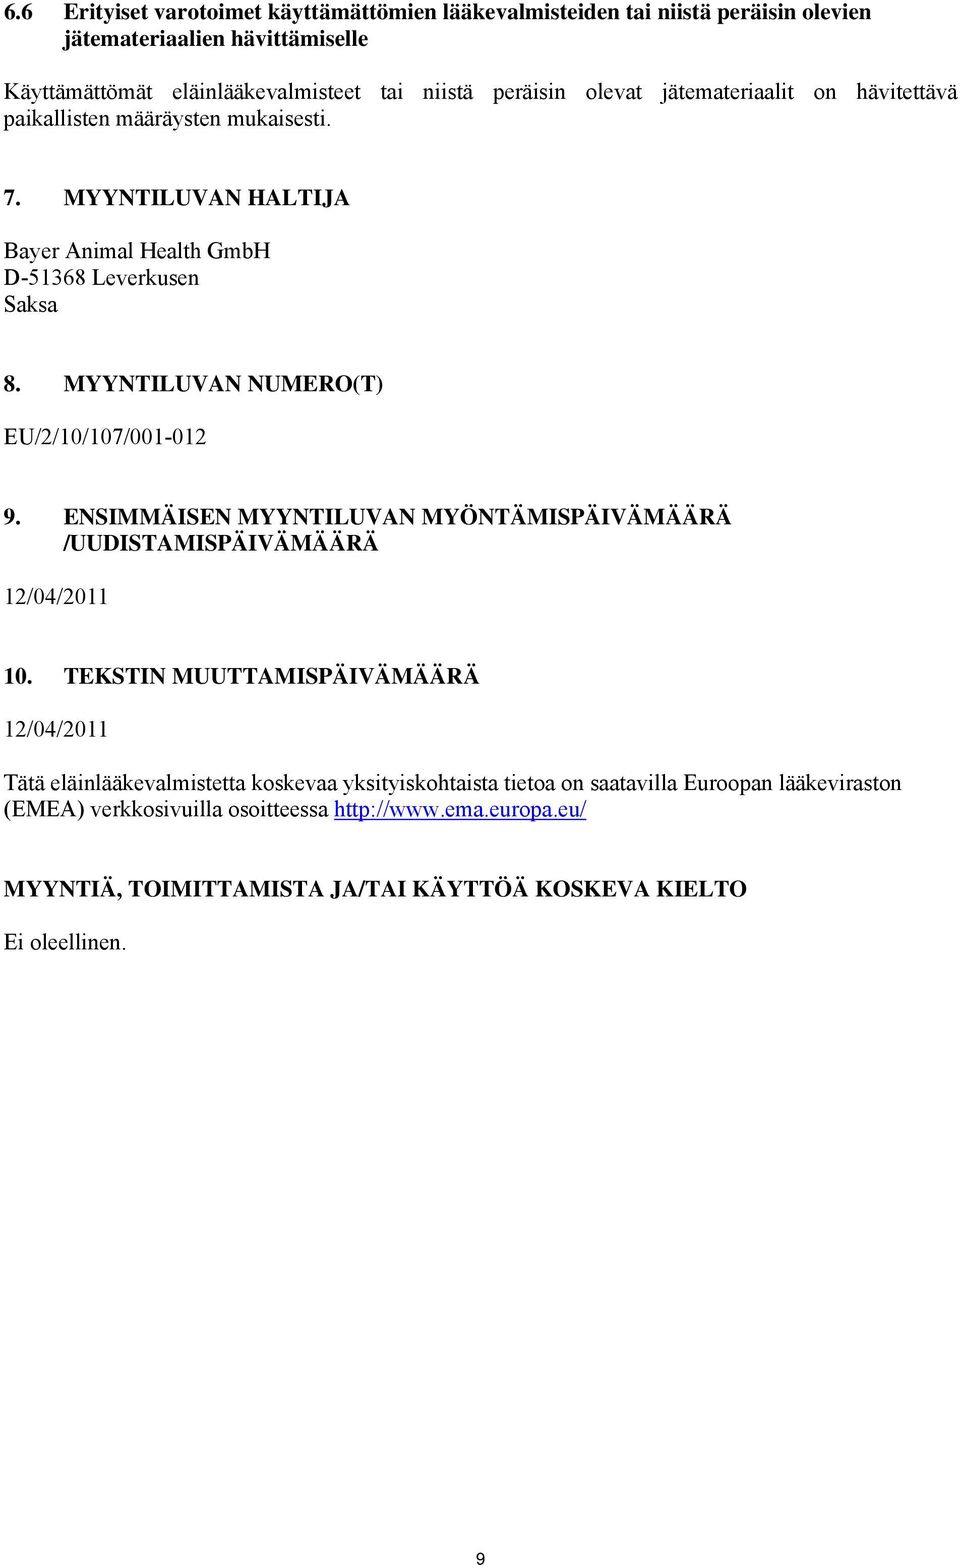 MYYNTILUVAN NUMERO(T) EU/2/10/107/001-012 9. ENSIMMÄISEN MYYNTILUVAN MYÖNTÄMISPÄIVÄMÄÄRÄ /UUDISTAMISPÄIVÄMÄÄRÄ 12/04/2011 10.